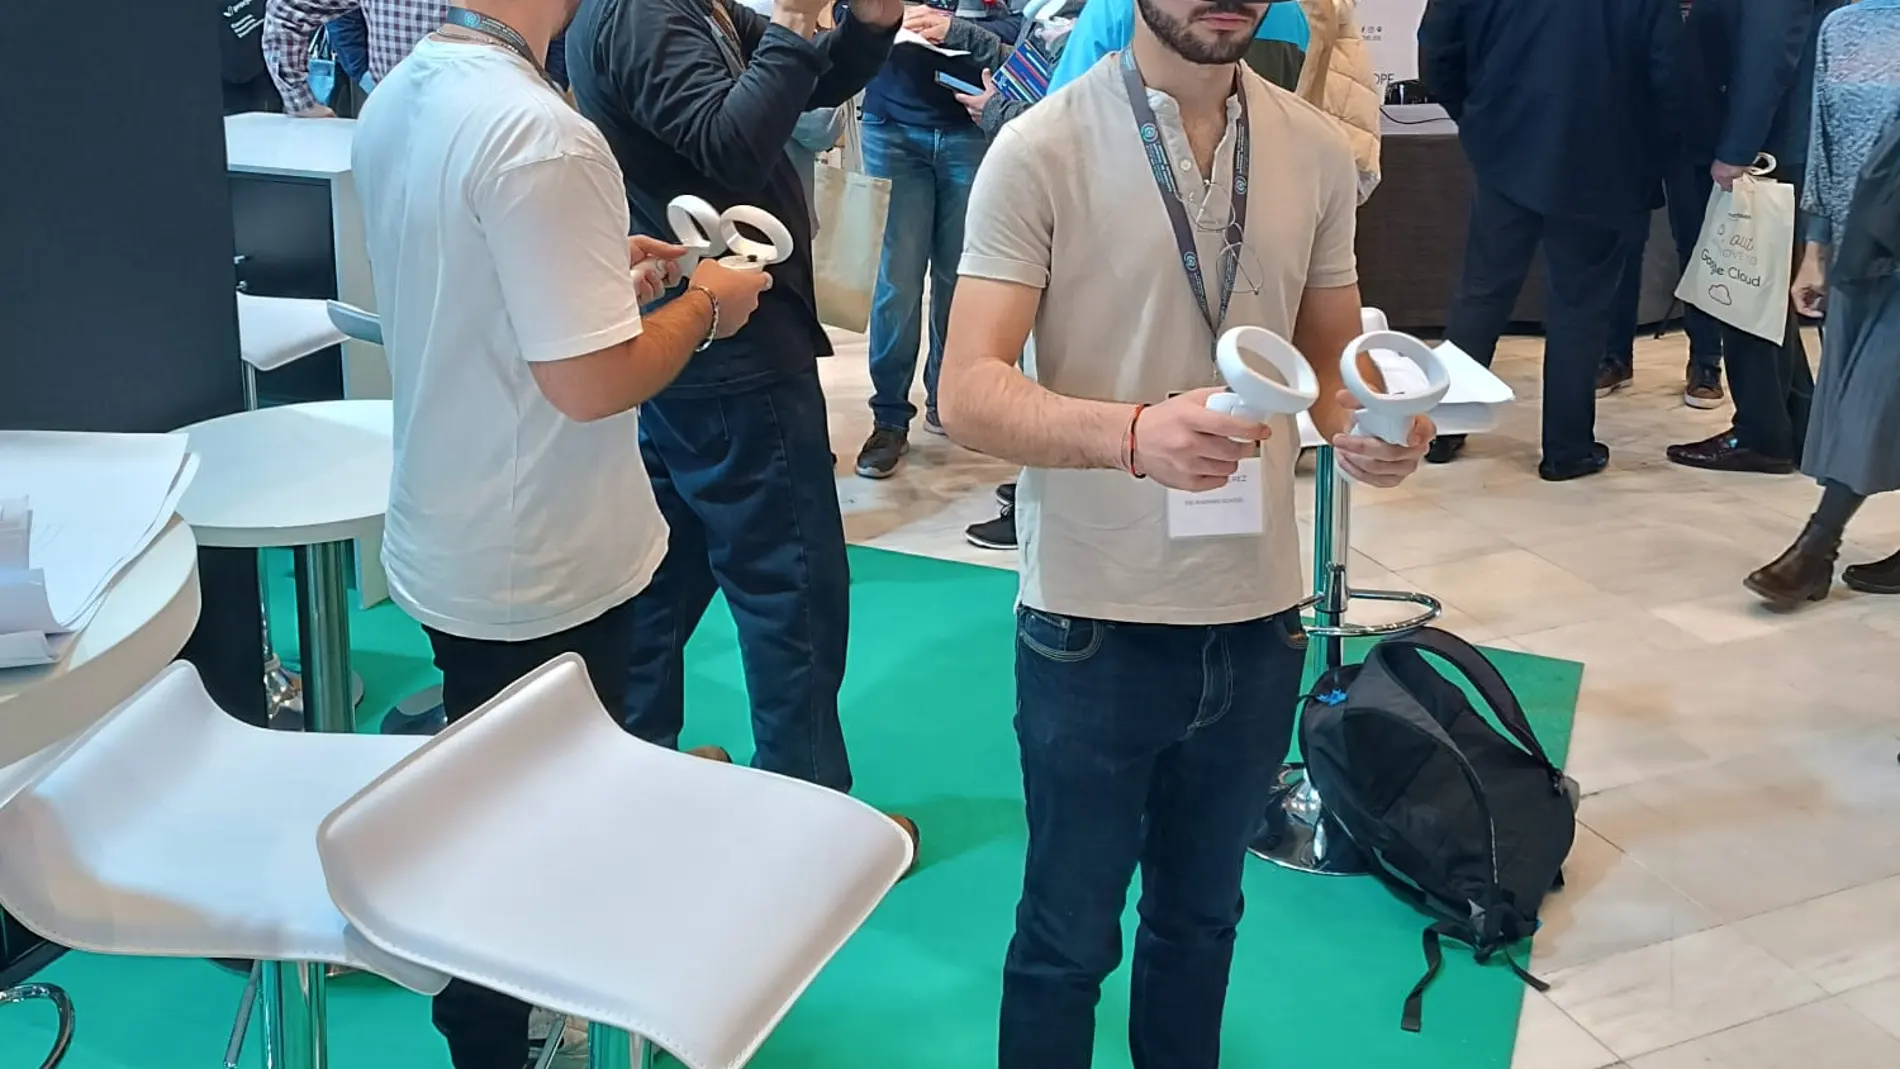 Gafas de realidad virtual para mostrar habilidades y encontrar un empleo